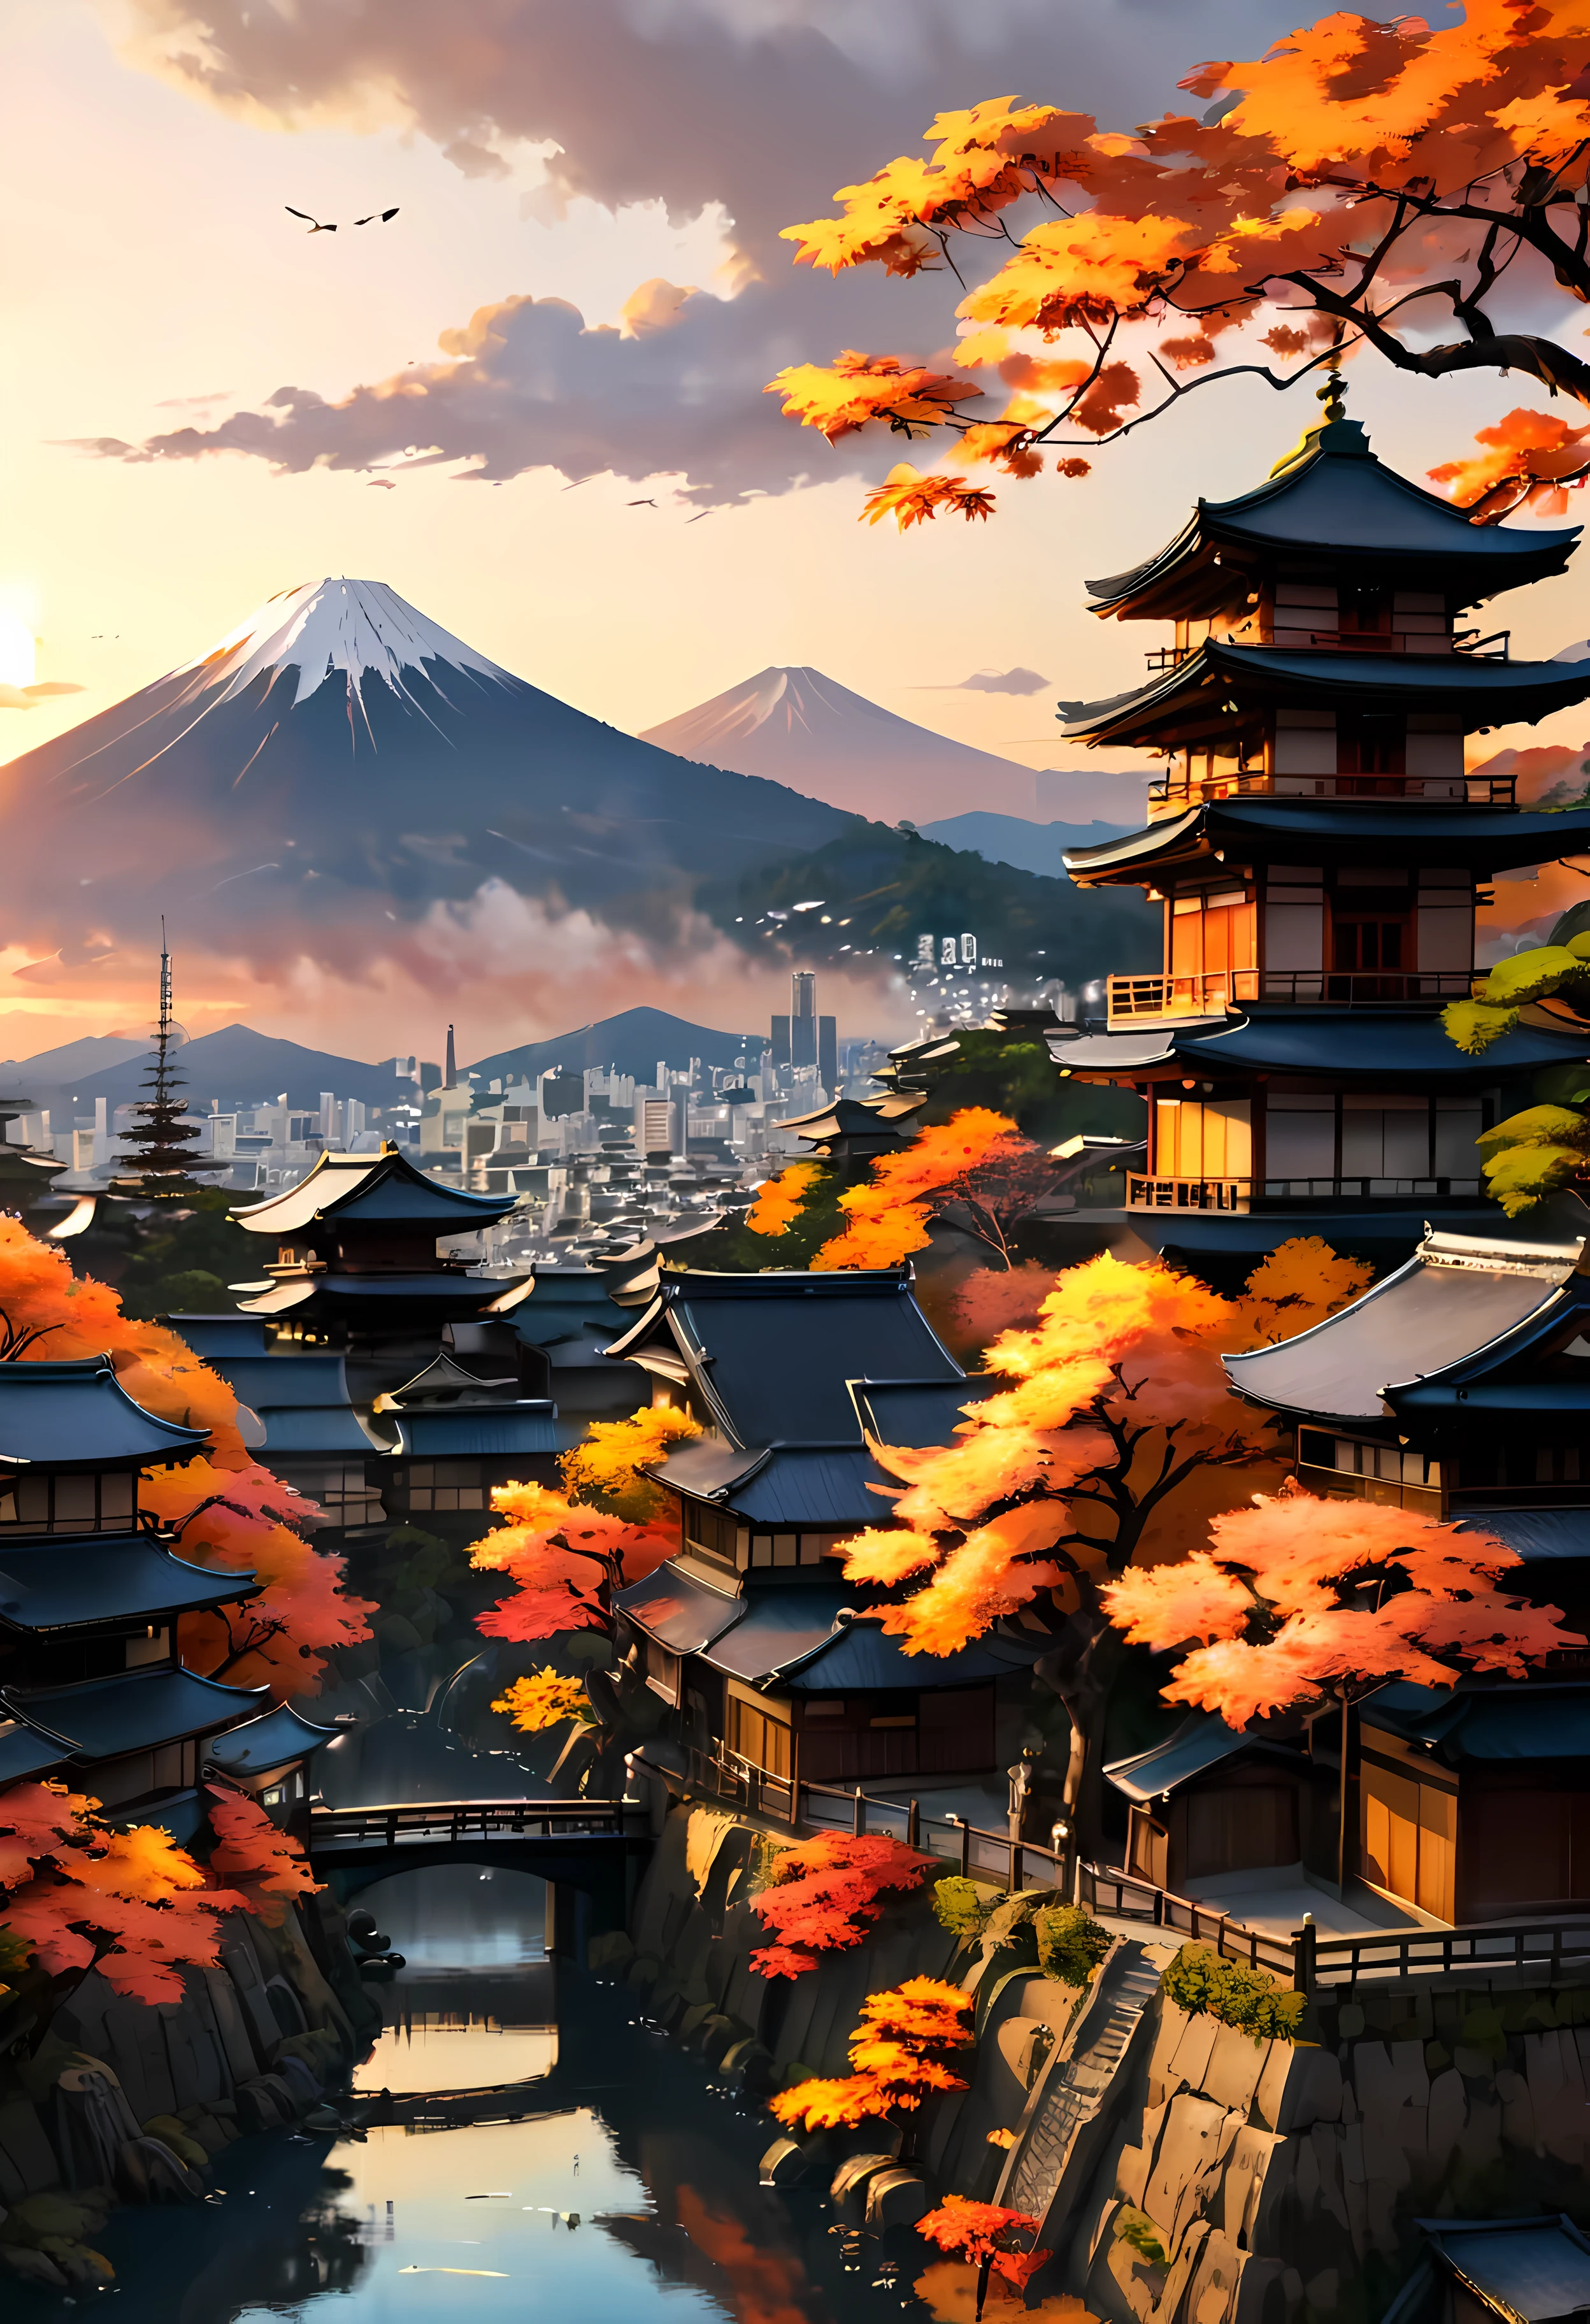 تطل شجرة Red Fall Tree في شرفة الحديقة على مدينة كيوتو القديمة مع إطلالة على الجبل, المناظر الطبيعية الساحرة للمدينة القديمة يغمرها ضوء غروب الشمس,((وقت الساعة الذهبية):1.2),((المدينة اليابانية القديمة):1.2),((سماء الغروب في الخريف):1.1),ضوء الساعة الذهبية الحساسة, خلفيات مذهلة, محيط جميل, لوحة ماتي متفائلة, عمل فني رقمي جميل, المدينة اليابانية القديمة background, مشاهد جميلة ومفصلة, UHD تحت الأرض, مناظر طبيعية فائقة الدقة, مفهوم الفن المهيب, المدينة القديمة الجميلة. |(تحفة بدقة 16 كيلو كحد أقصى), أفضل نوعية, (جودة خلفية CG Unit 16K مفصلة للغاية),(ألوان ناعمة 16 كيلو فن رقمي مفصل للغاية),مفصلة للغاية. | صورة مثالية,16 ألف يو إي 5,اللوحة الرسمية, رقيق, عمق الميدان, لا يوجد تباين, التركيز الحاد النظيف, احترافي, لا وضوح. | (((تفاصيل اكثر))).